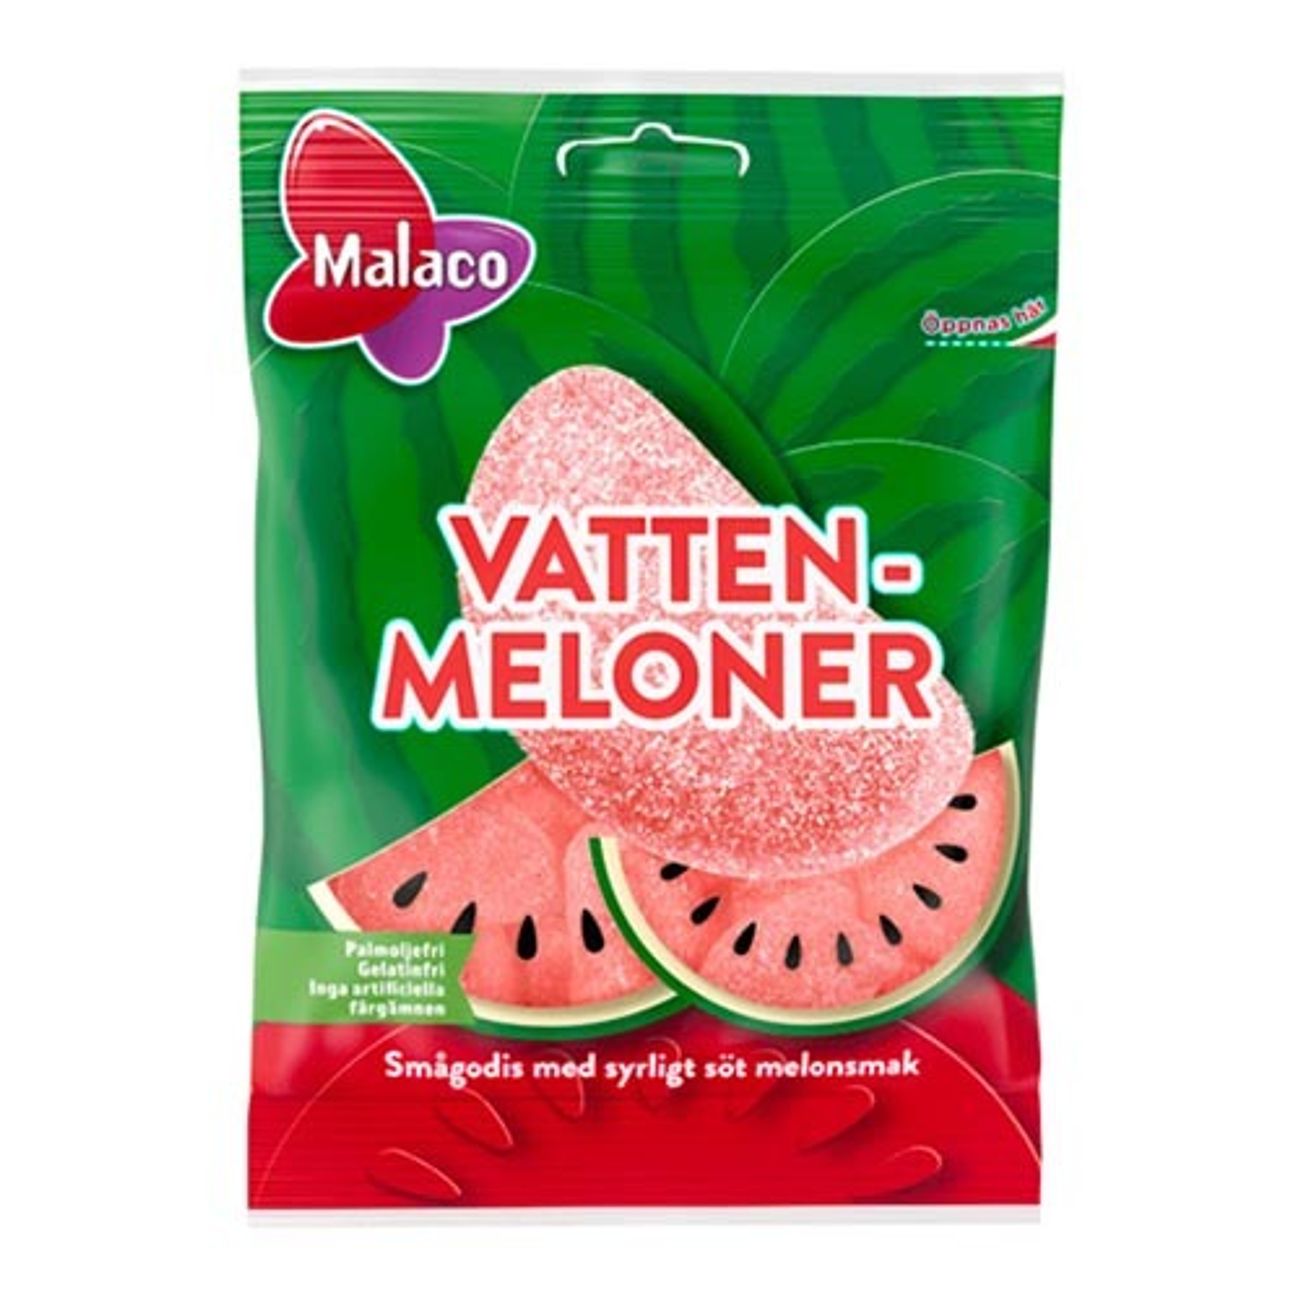 vattenmeloner-i-pase-1